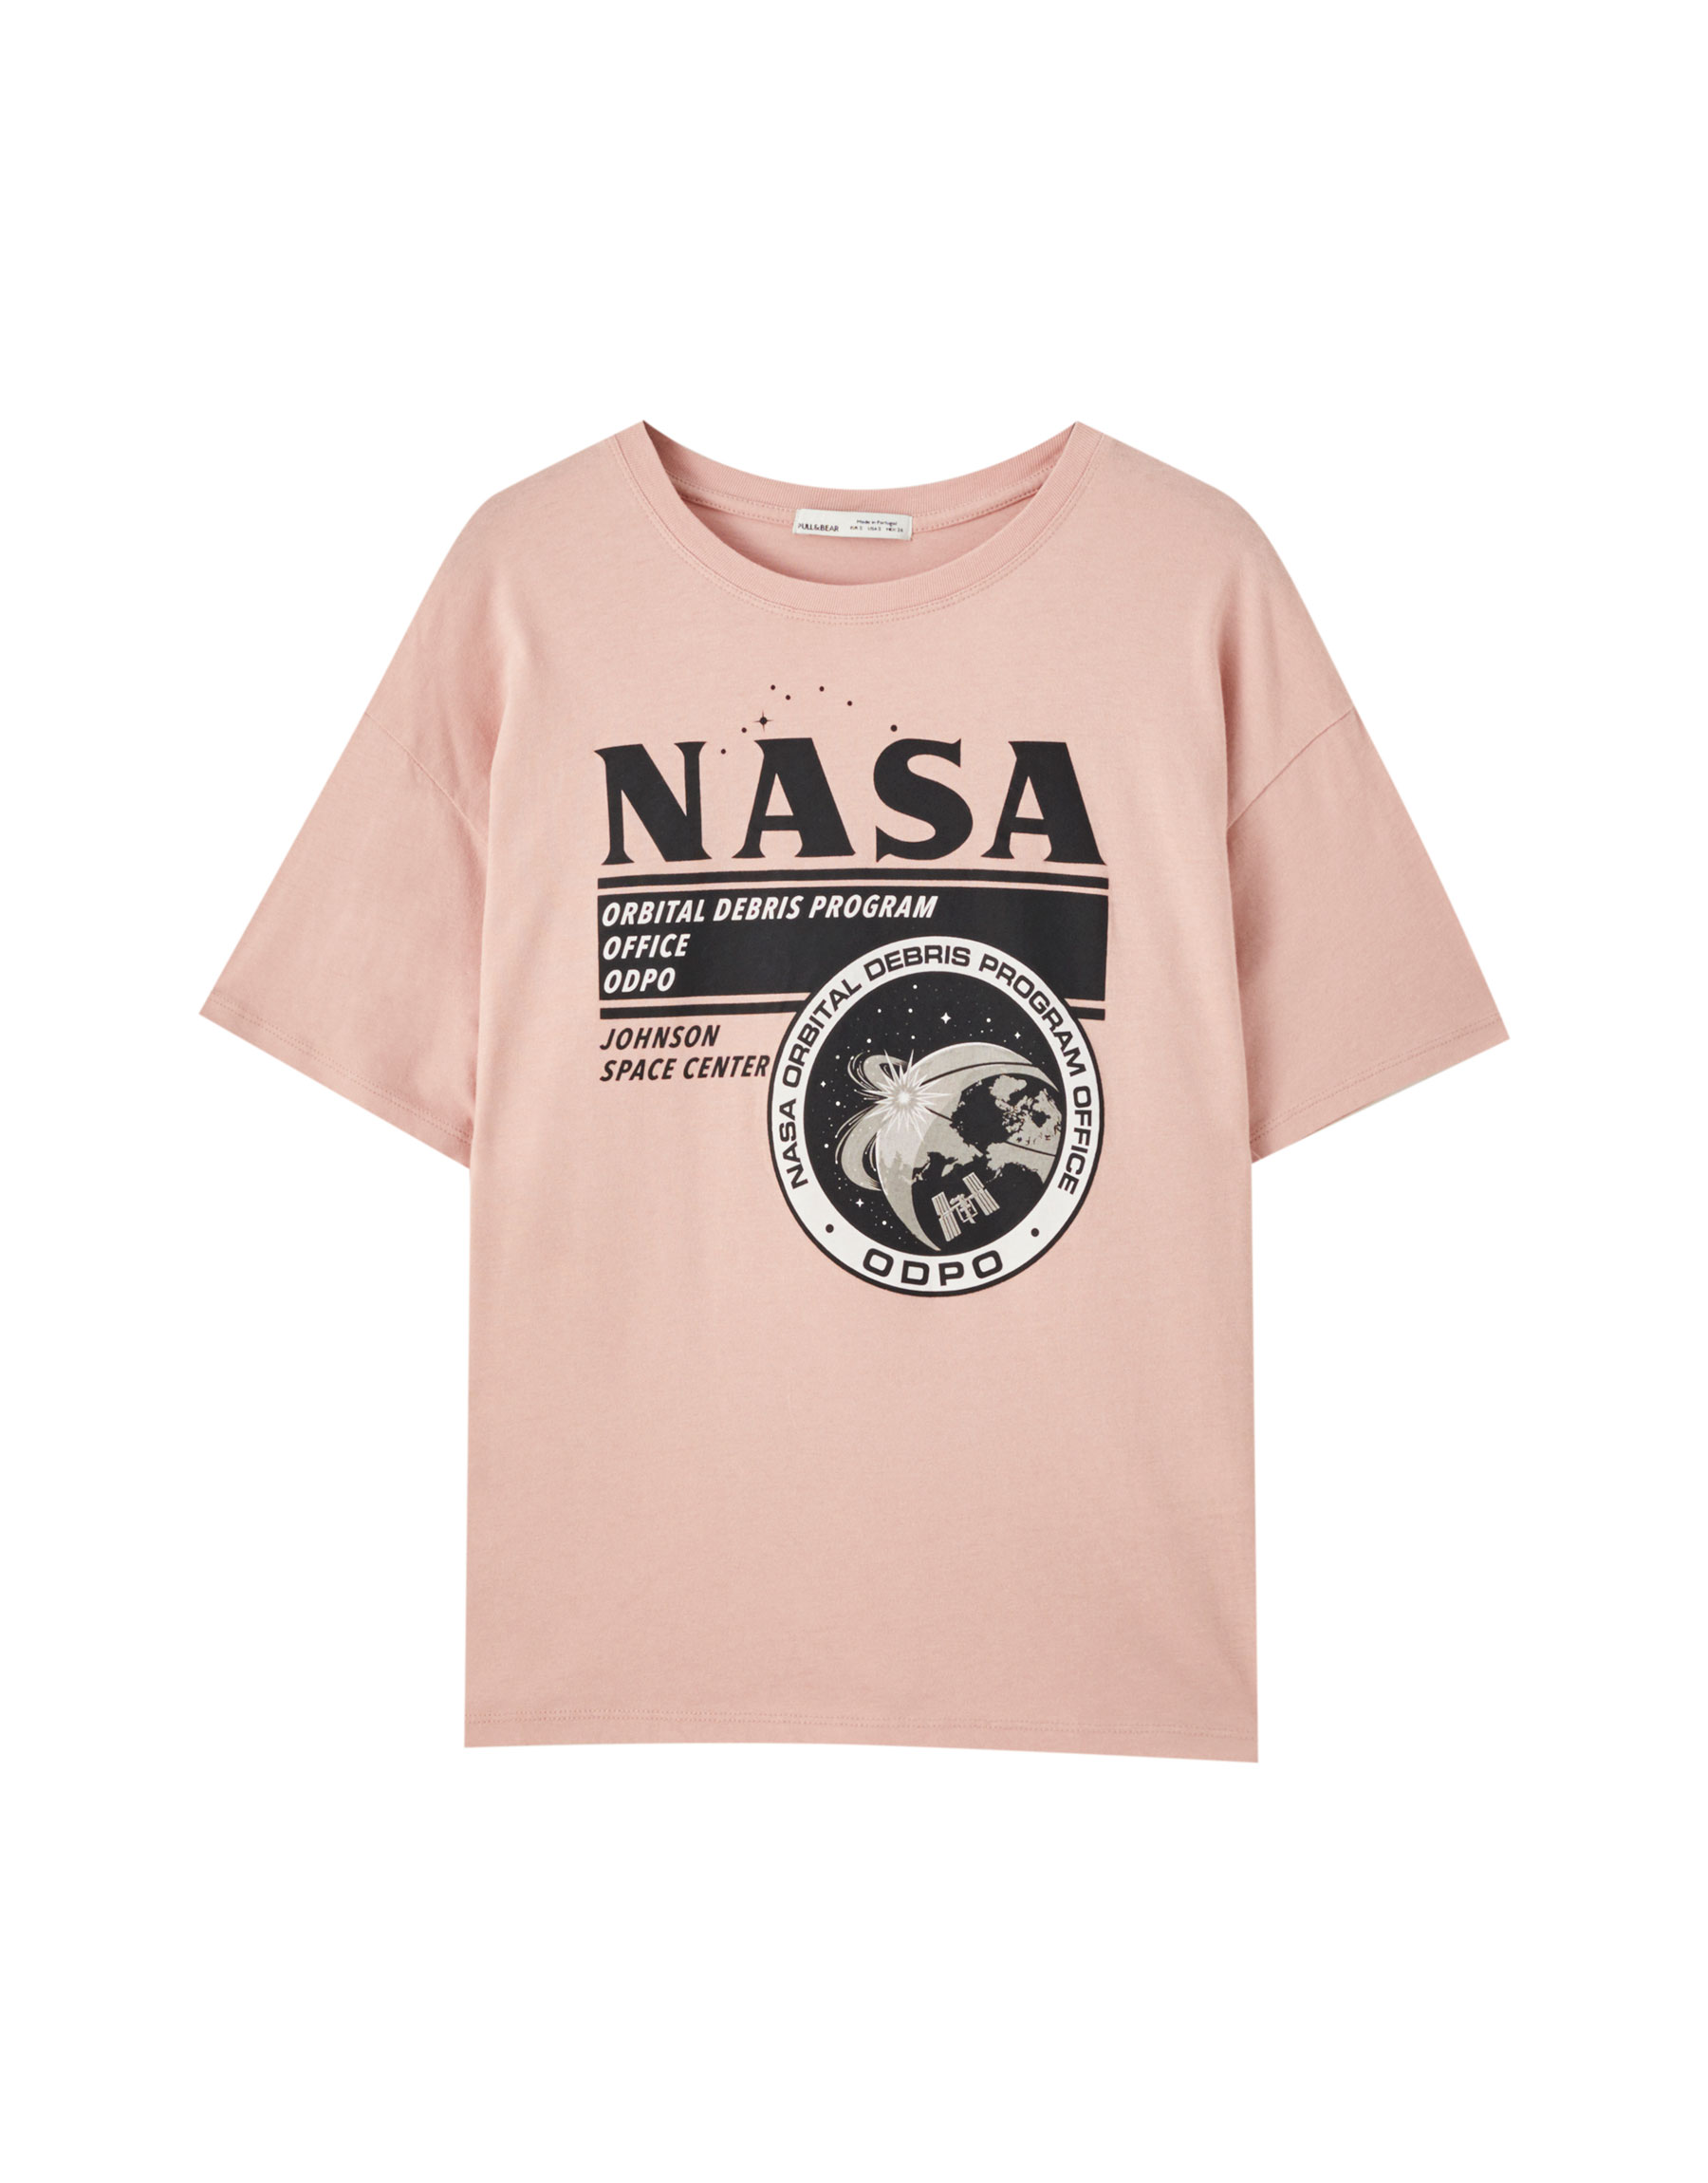 Розовая футболка с логотипом NASA ЦВЕТ РОЗОВОГО ДЕРЕВА Pull & Bear